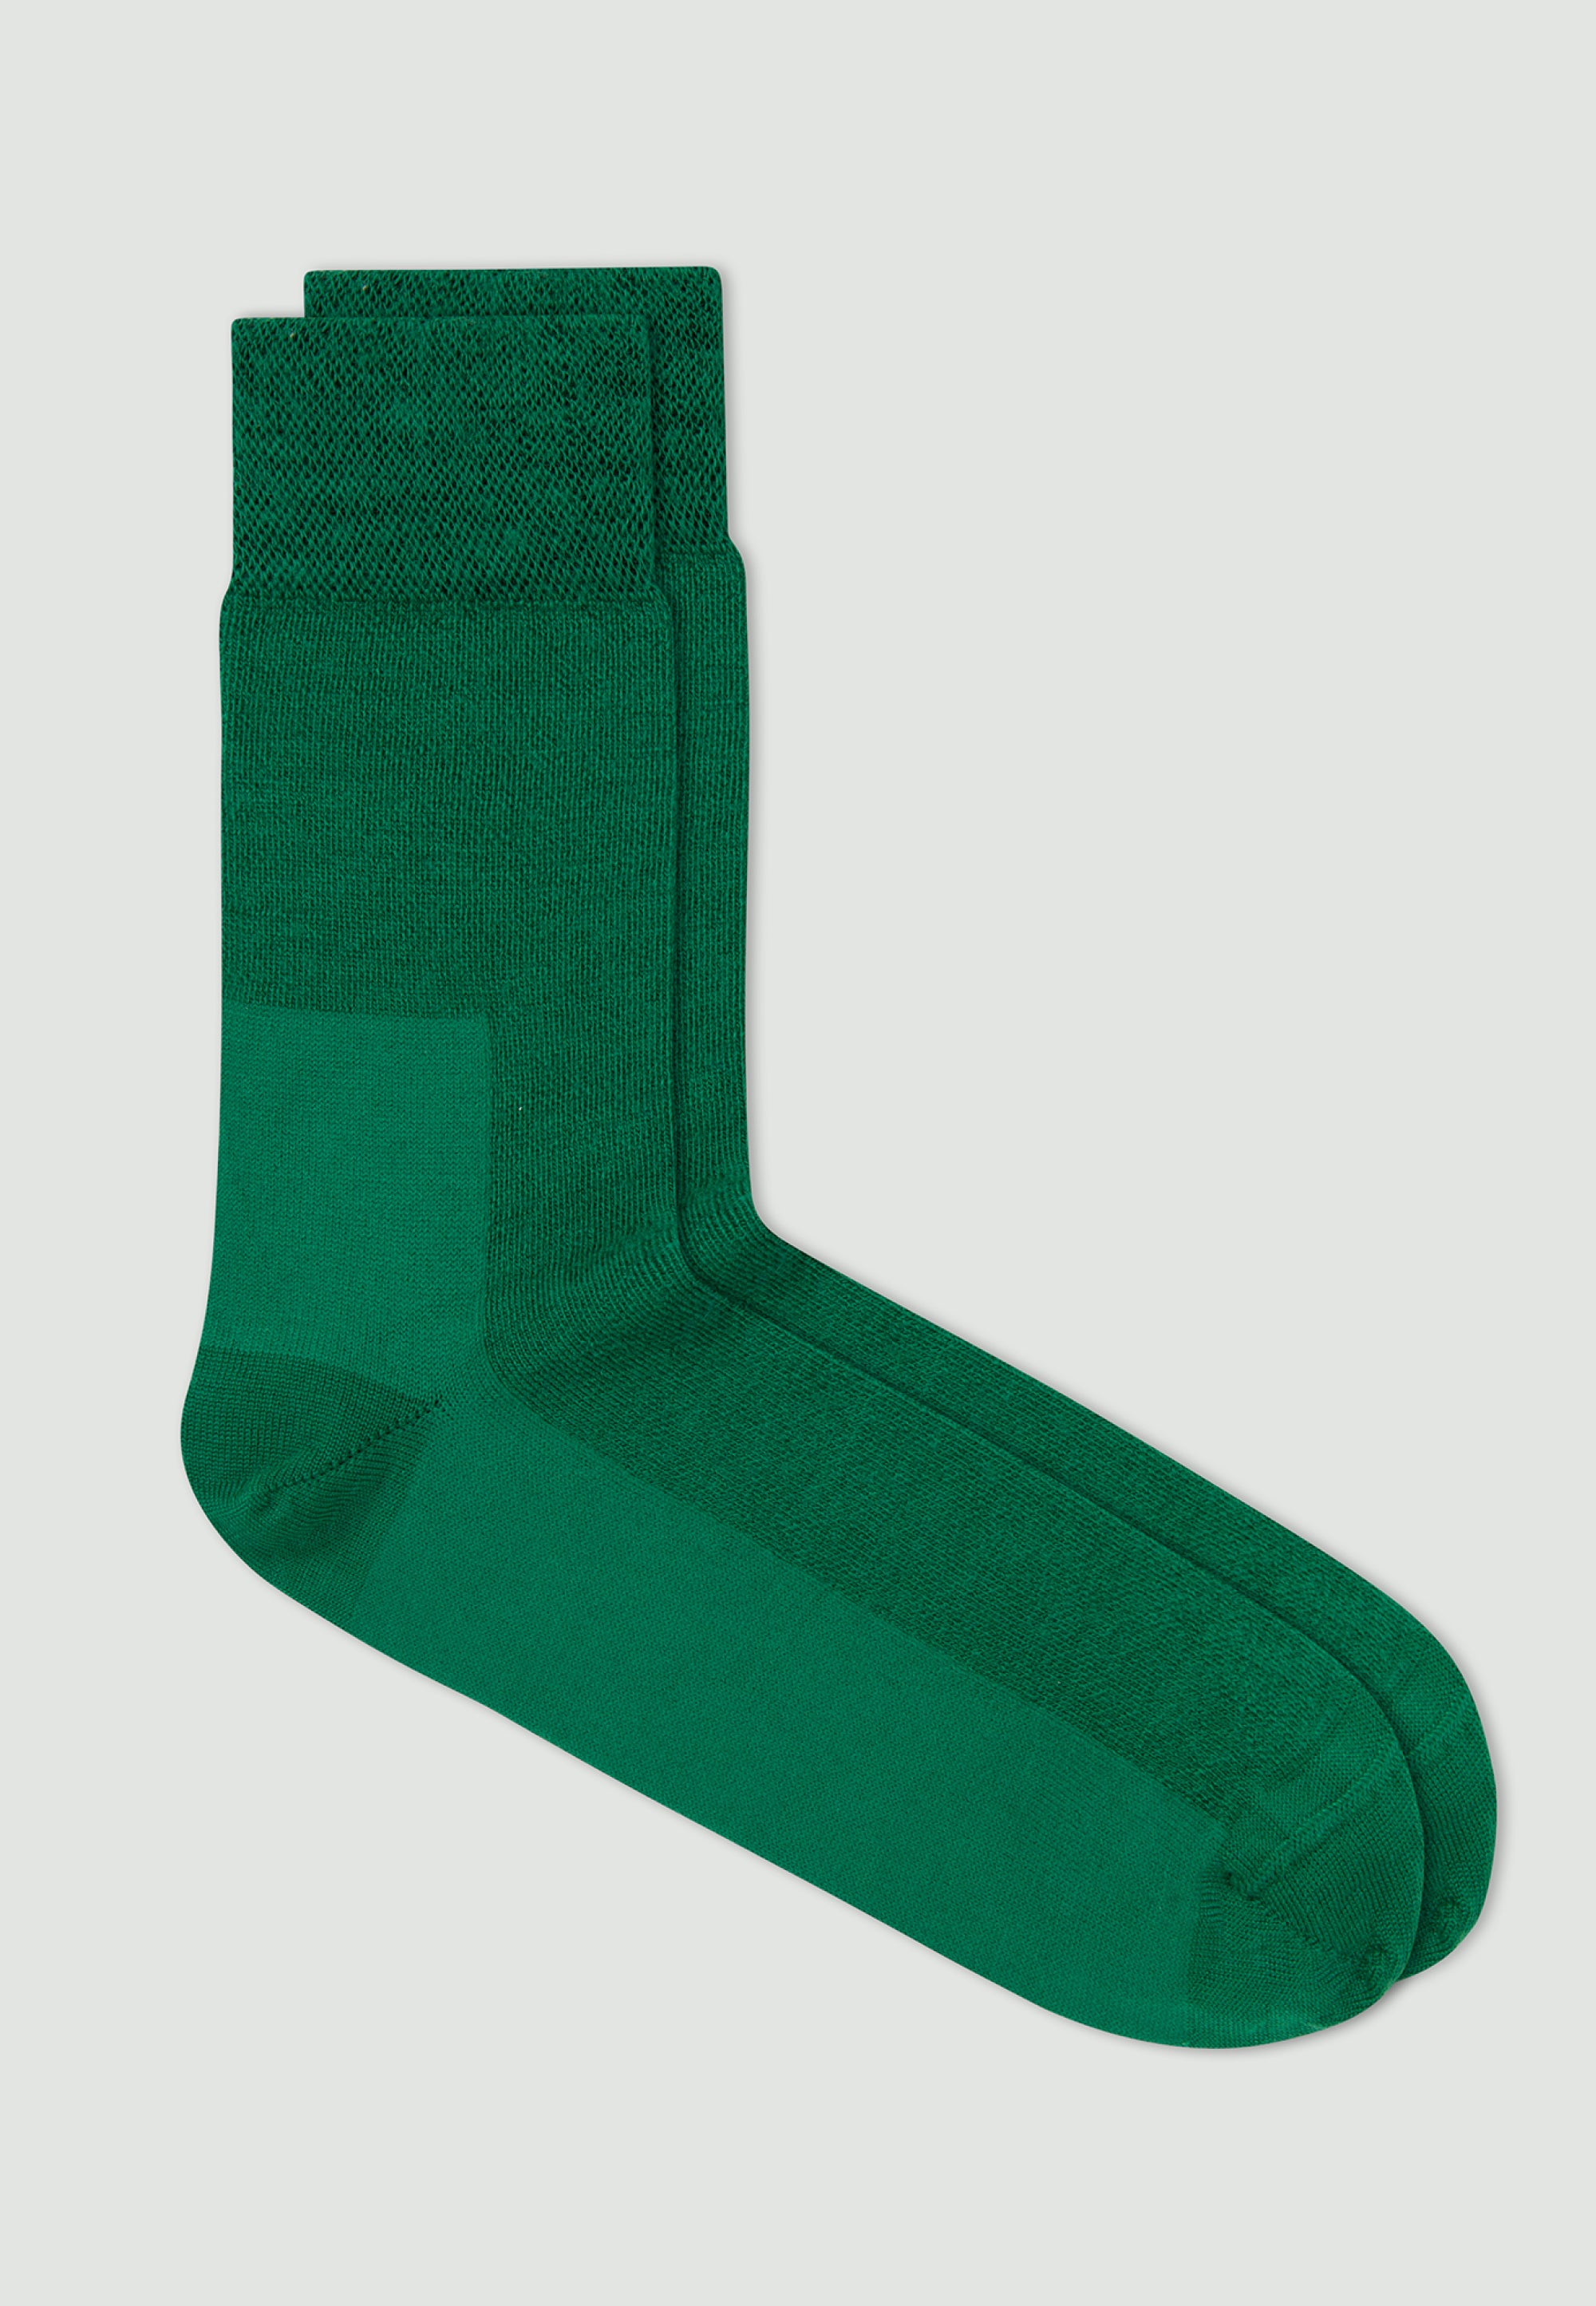 les chaussettes en laine vert gazon 1 main